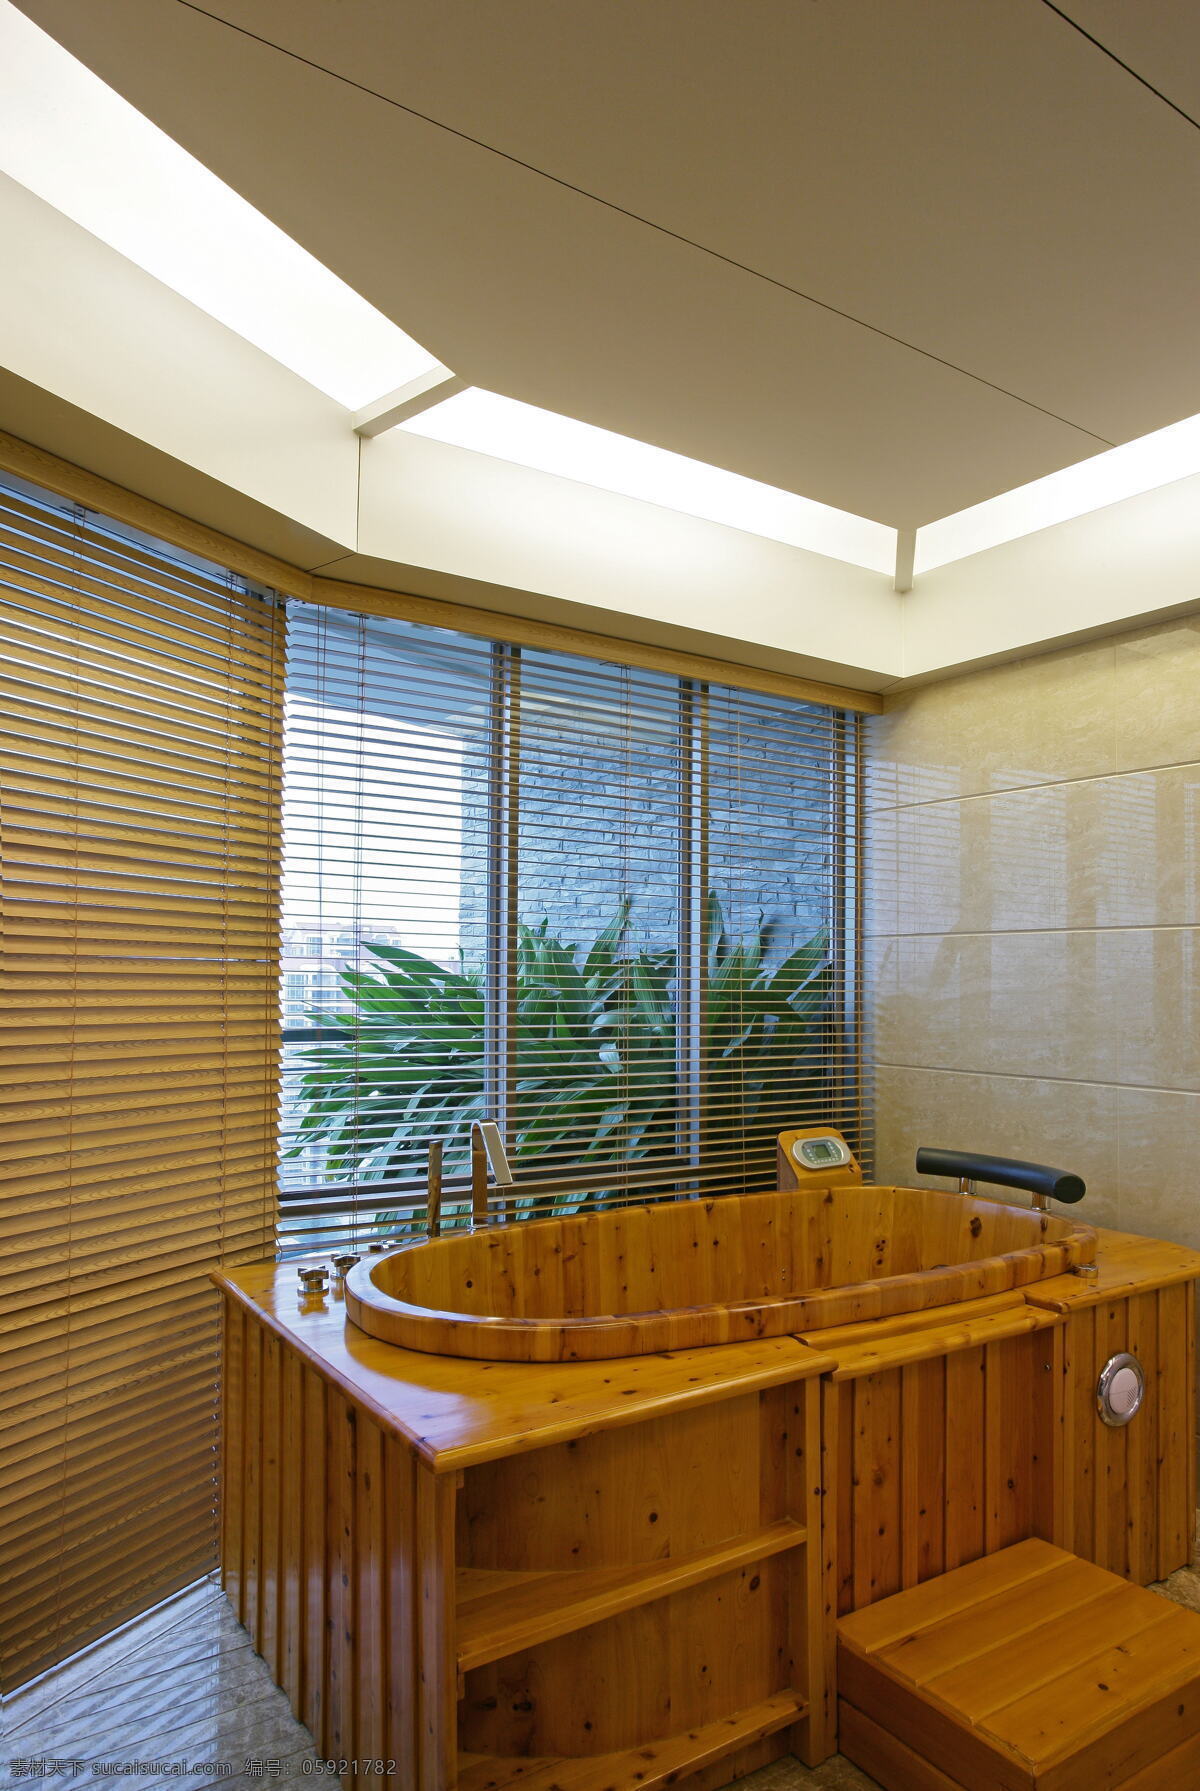 wsj 室内 沐浴 池 效果图 a 室内设计 现代简约 沐浴池 白色